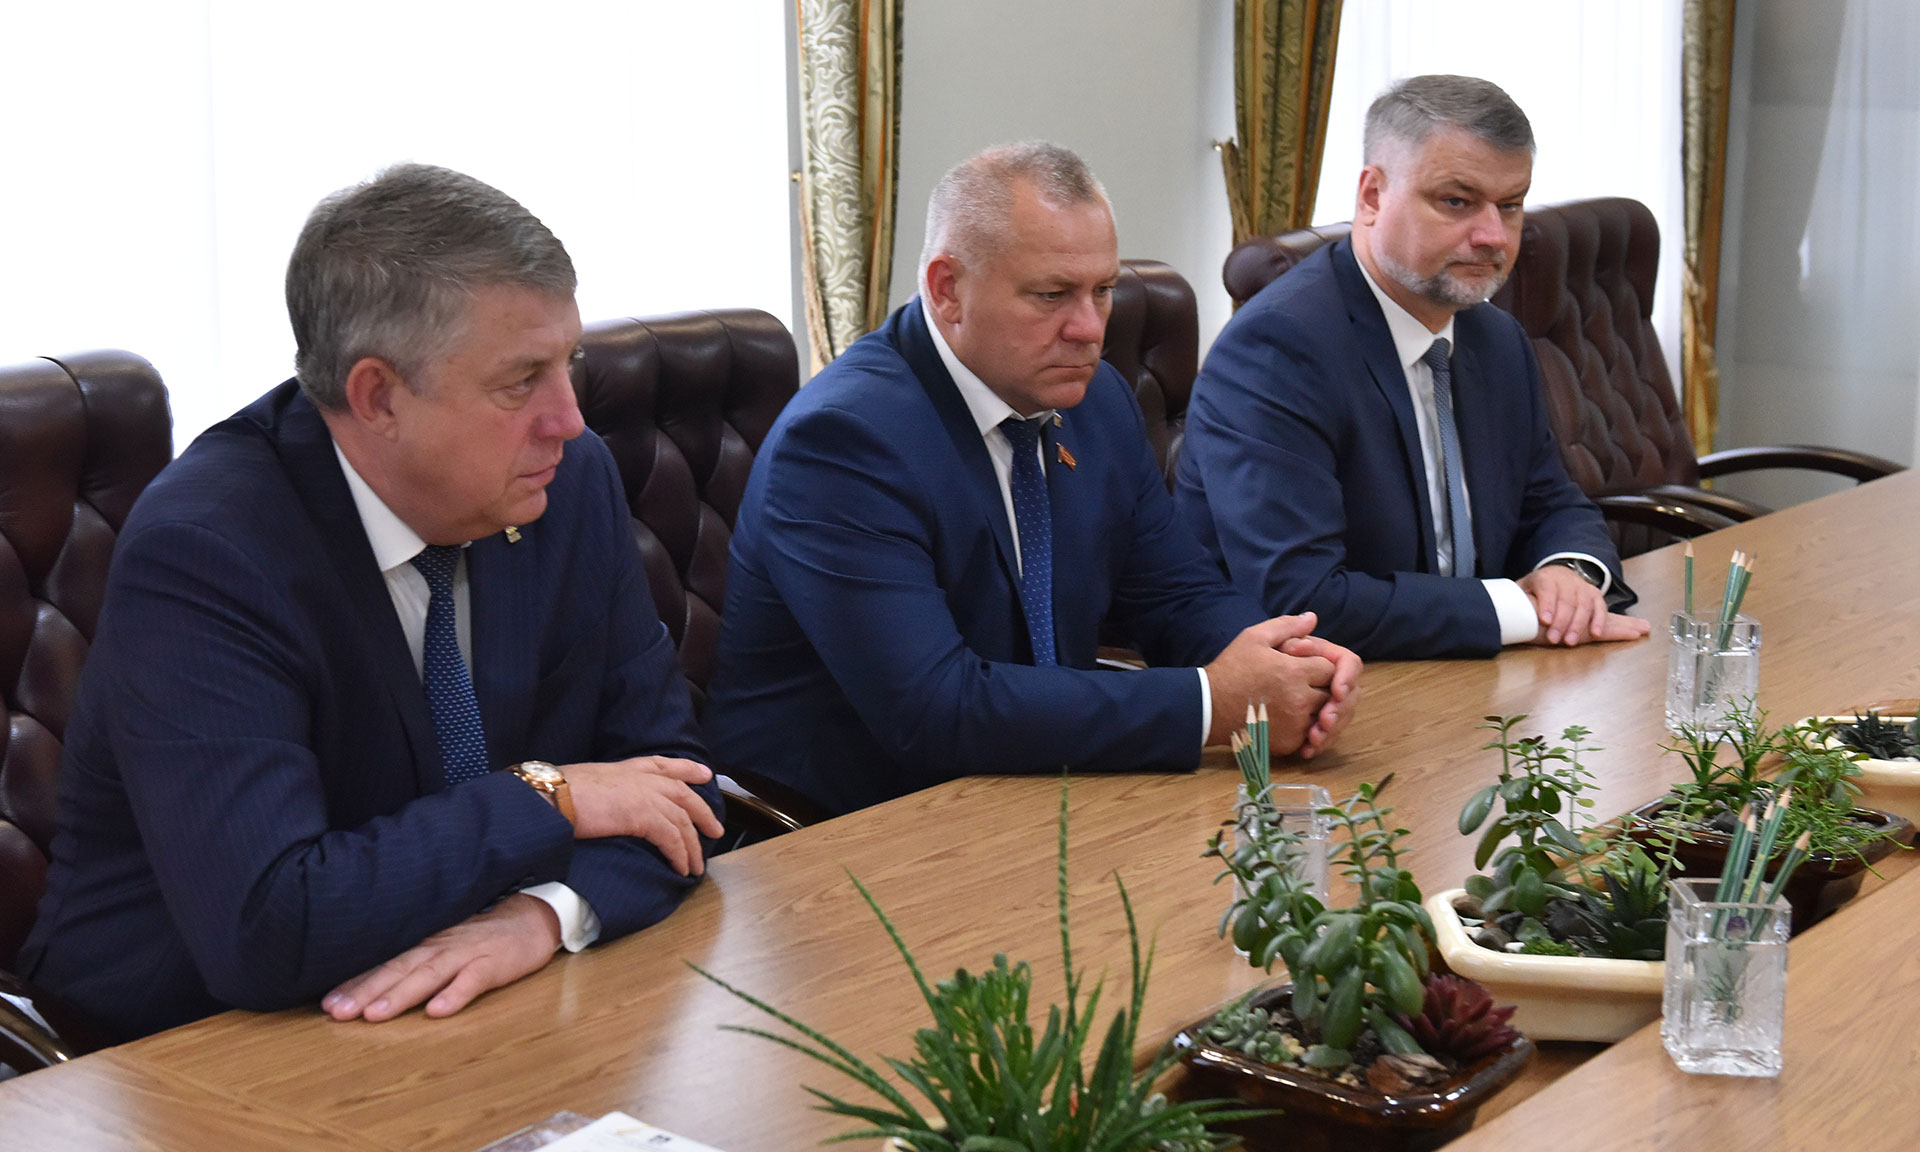 Первый заместитель Министра спорта Российской Федерации Азат Кадыров: «Показатели в Брянской области хорошие, есть динамика. И при таком подходе, я уверен, эта динамика будет сохраняться!» предпросмотр